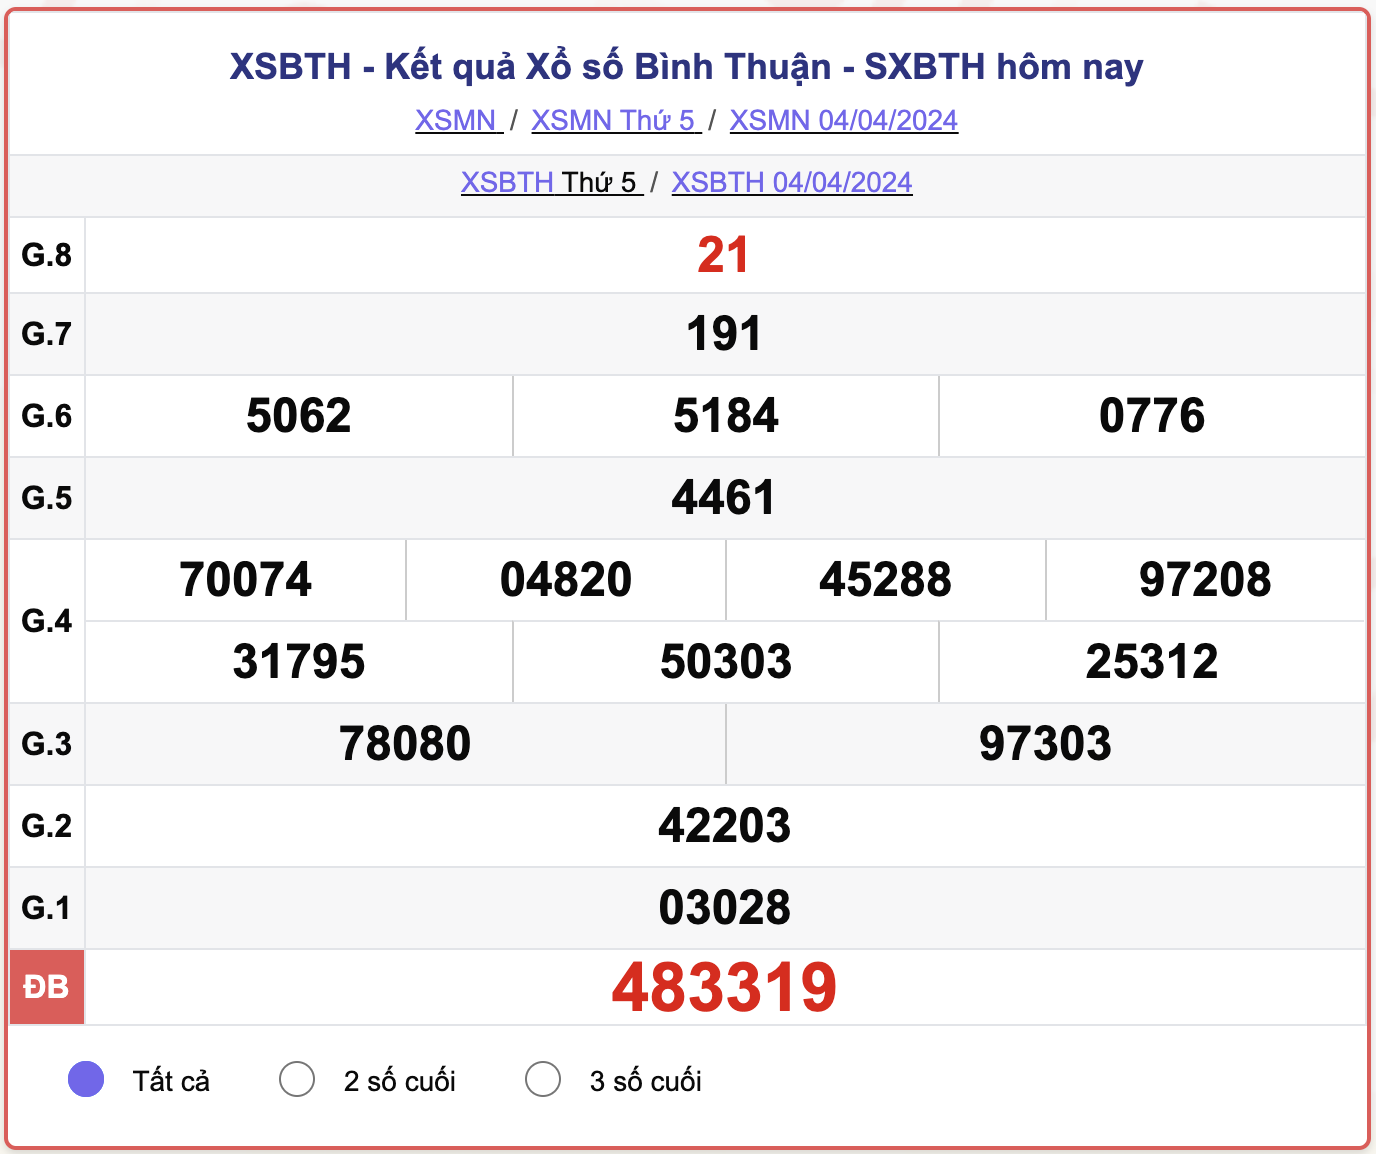 XSBTH thứ 5, kết quả xổ số Bình Thuận ngày 4/4/2024